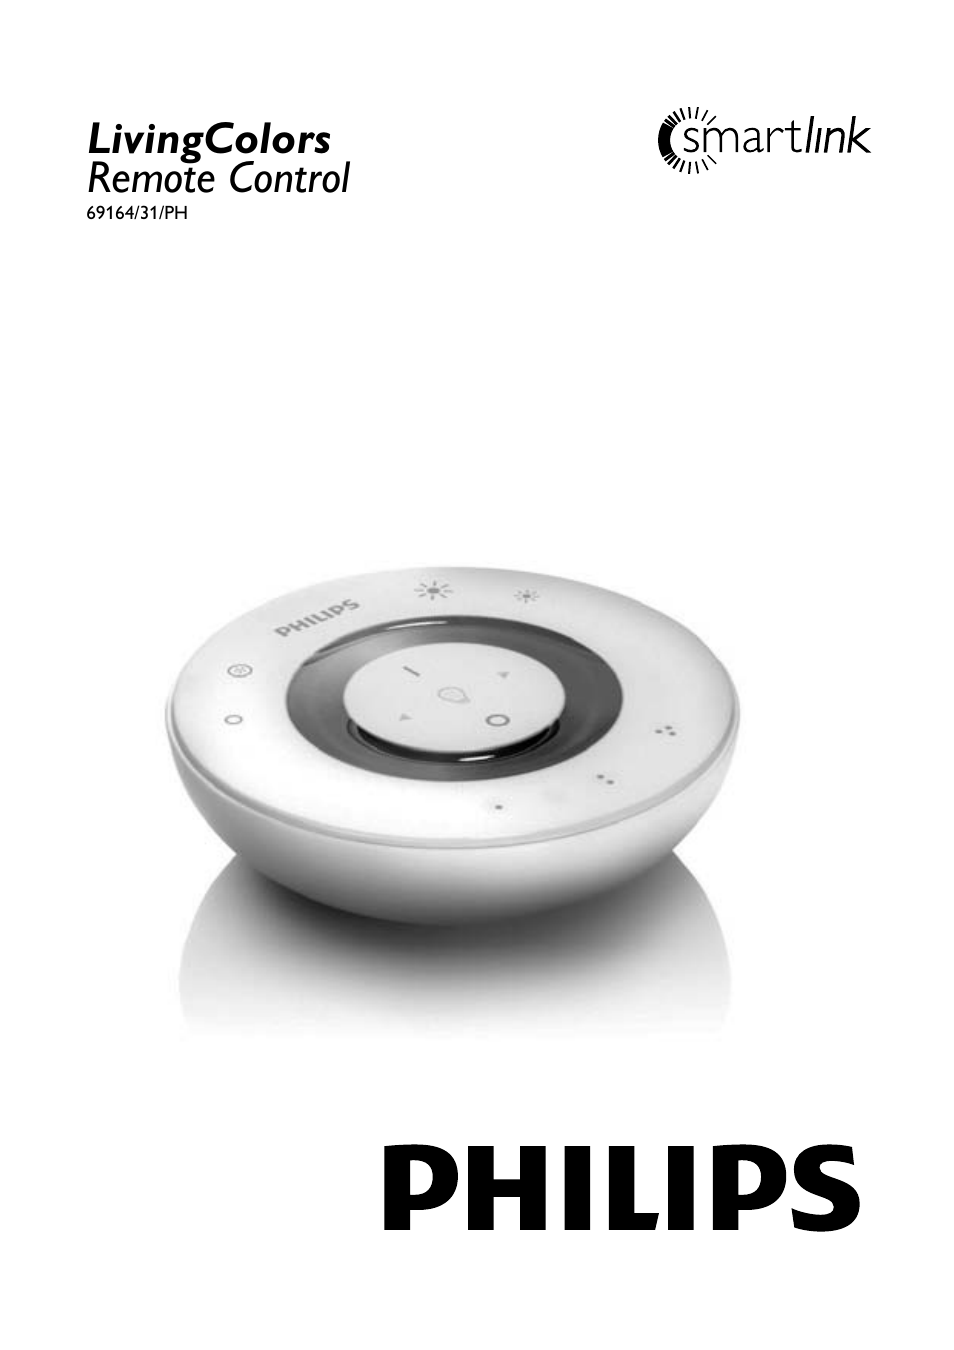 Philips LivingColors Mando a distancia User Manual | 140 pages | Also for:  LivingColors Télécommande, LivingColors Fernbedienung